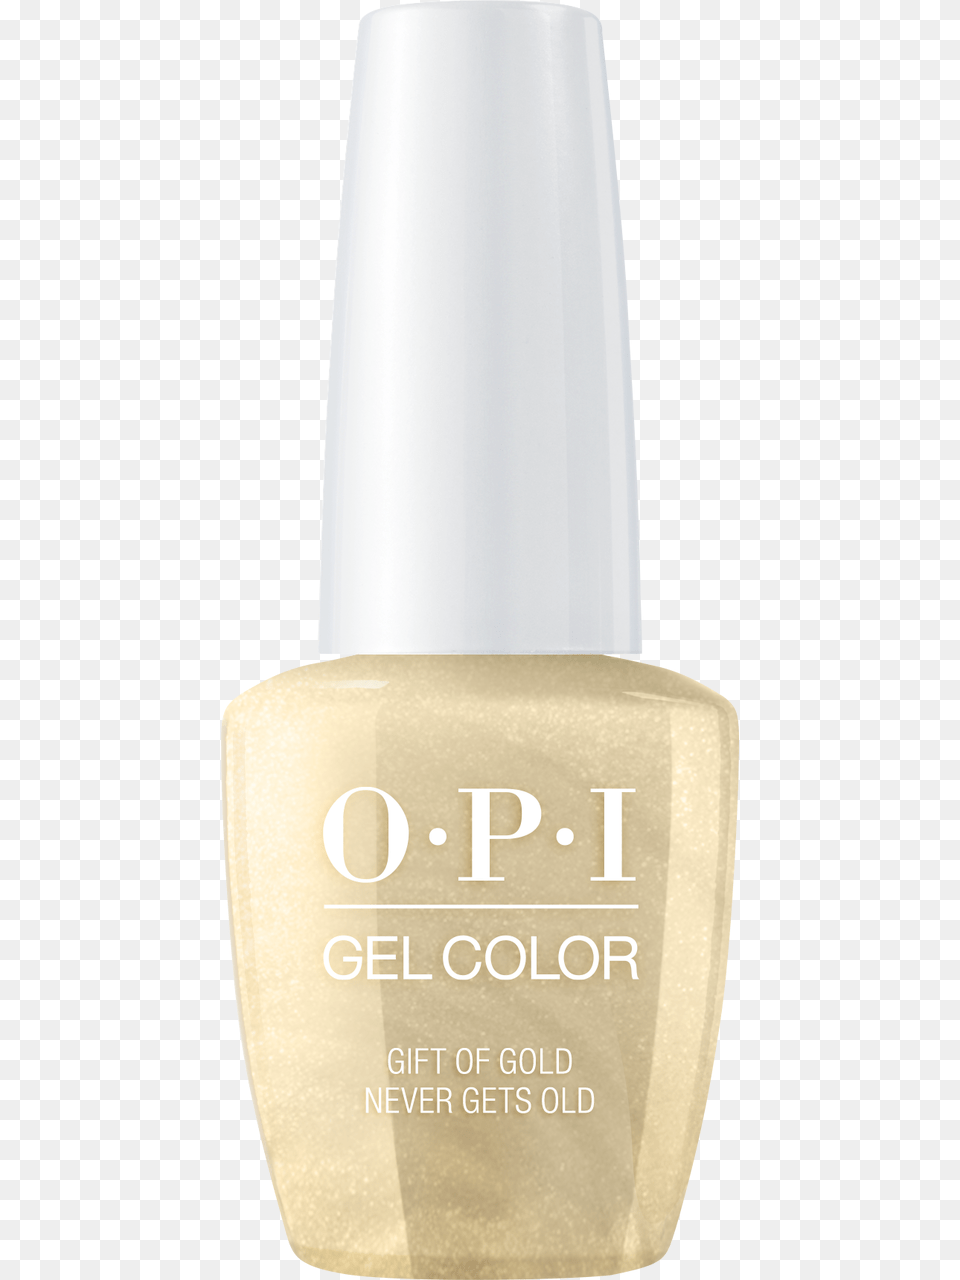 Opi Gelcolor Nail Polish, Cosmetics, Nail Polish Png Image